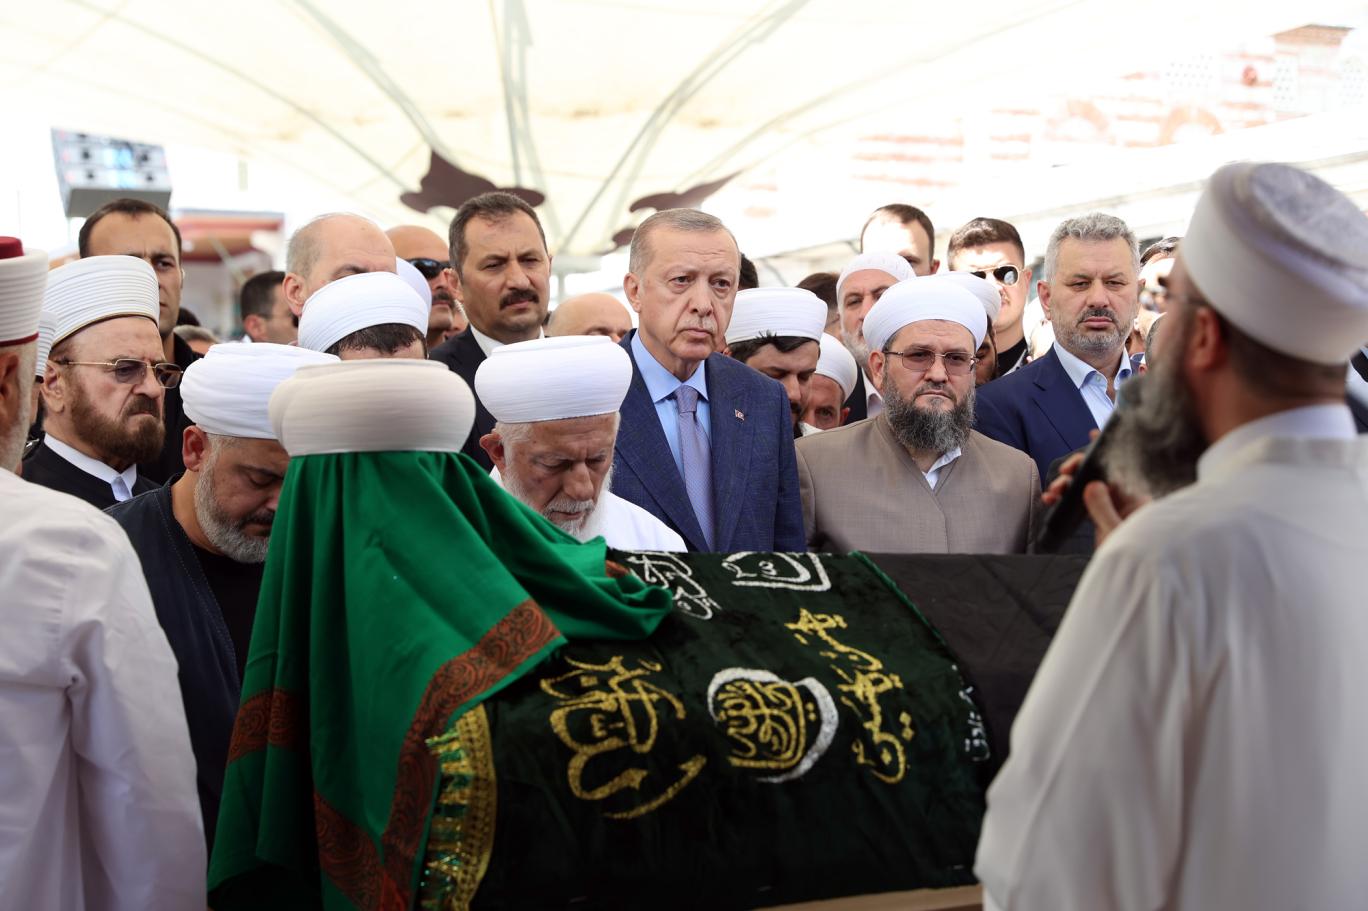 İsmailağa Cemaati lideri Mahmut Ustaosmanoğlu için cenaze töreni düzenlendi | Independent Türkçe